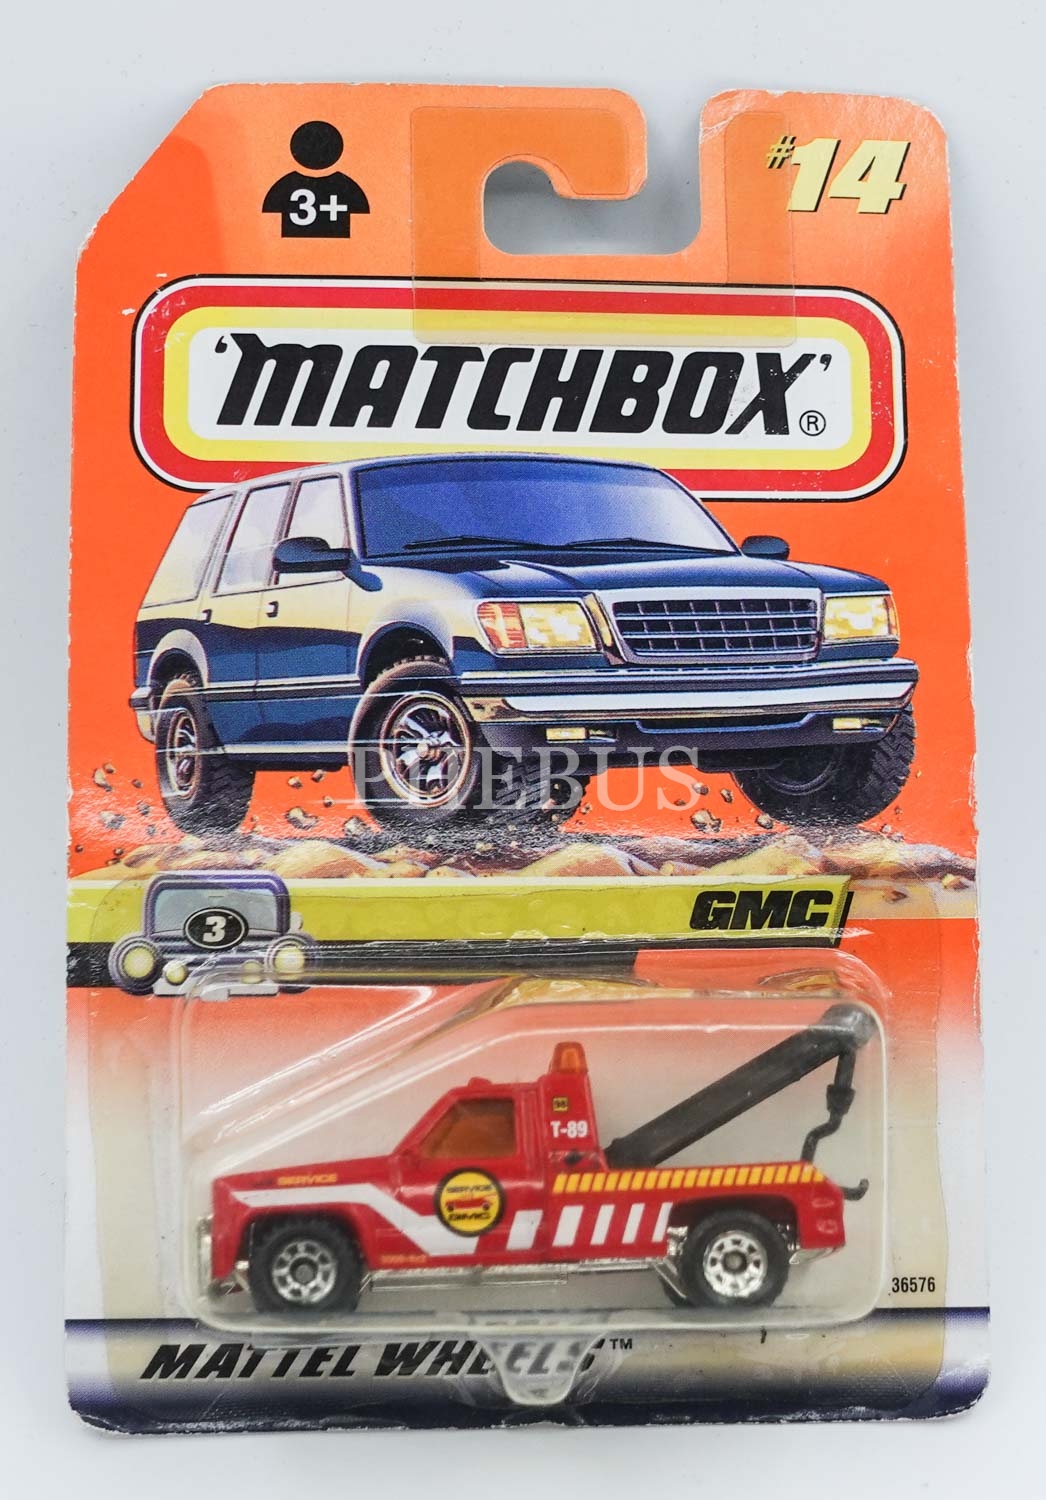 Matchbox marka ´´GMC Wrecker´´ model koleksiyonluk teneke araç, 1/72 ölçeğinde 16x11 cm (kutusundadır)...